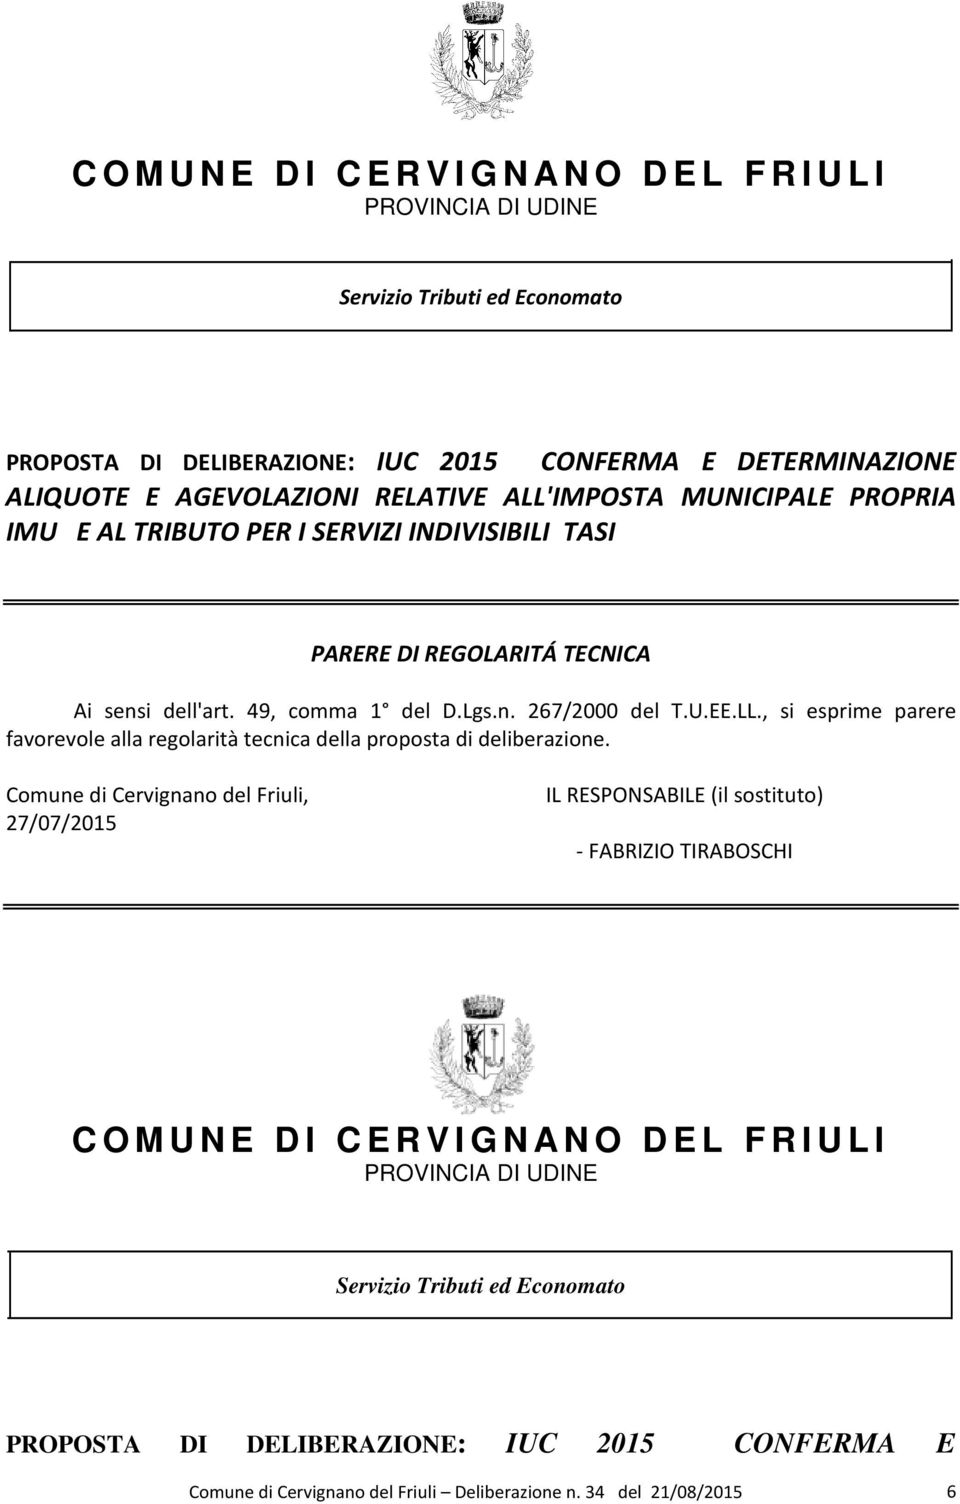 Comune di Cervignano del Friuli, 27/07/2015 IL RESPONSABILE (il sostituto) - FABRIZIO TIRABOSCHI C O M U N E D I C E R V I G N A N O D E L F R I U L I PROVINCIA DI UDINE Servizio Tributi ed